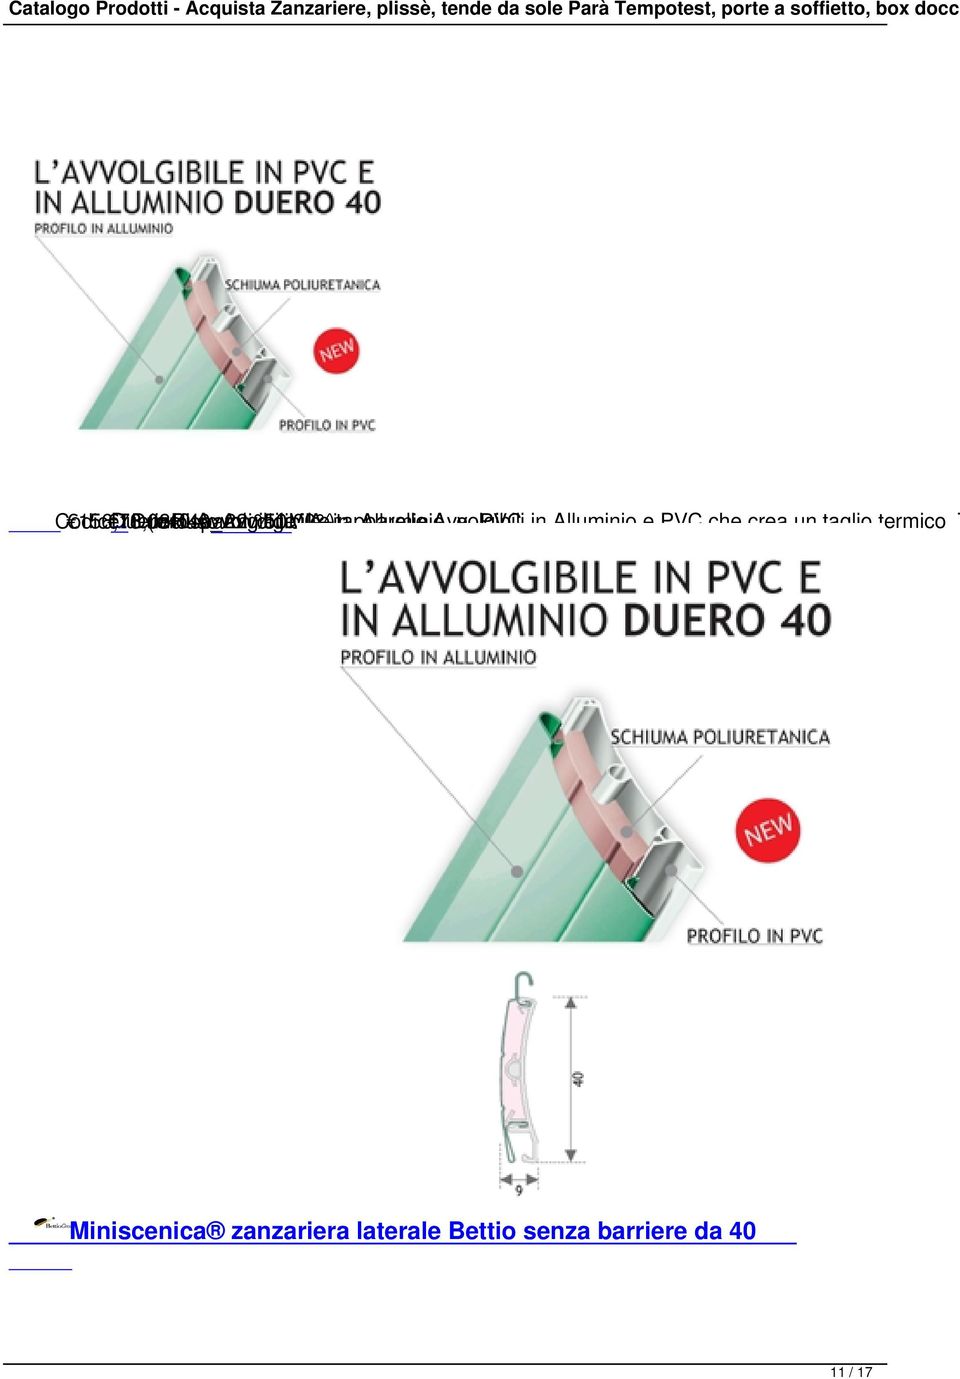 Duero40_Avvolgibile_in_Alluminio_e_PVC 156,16 78,08.